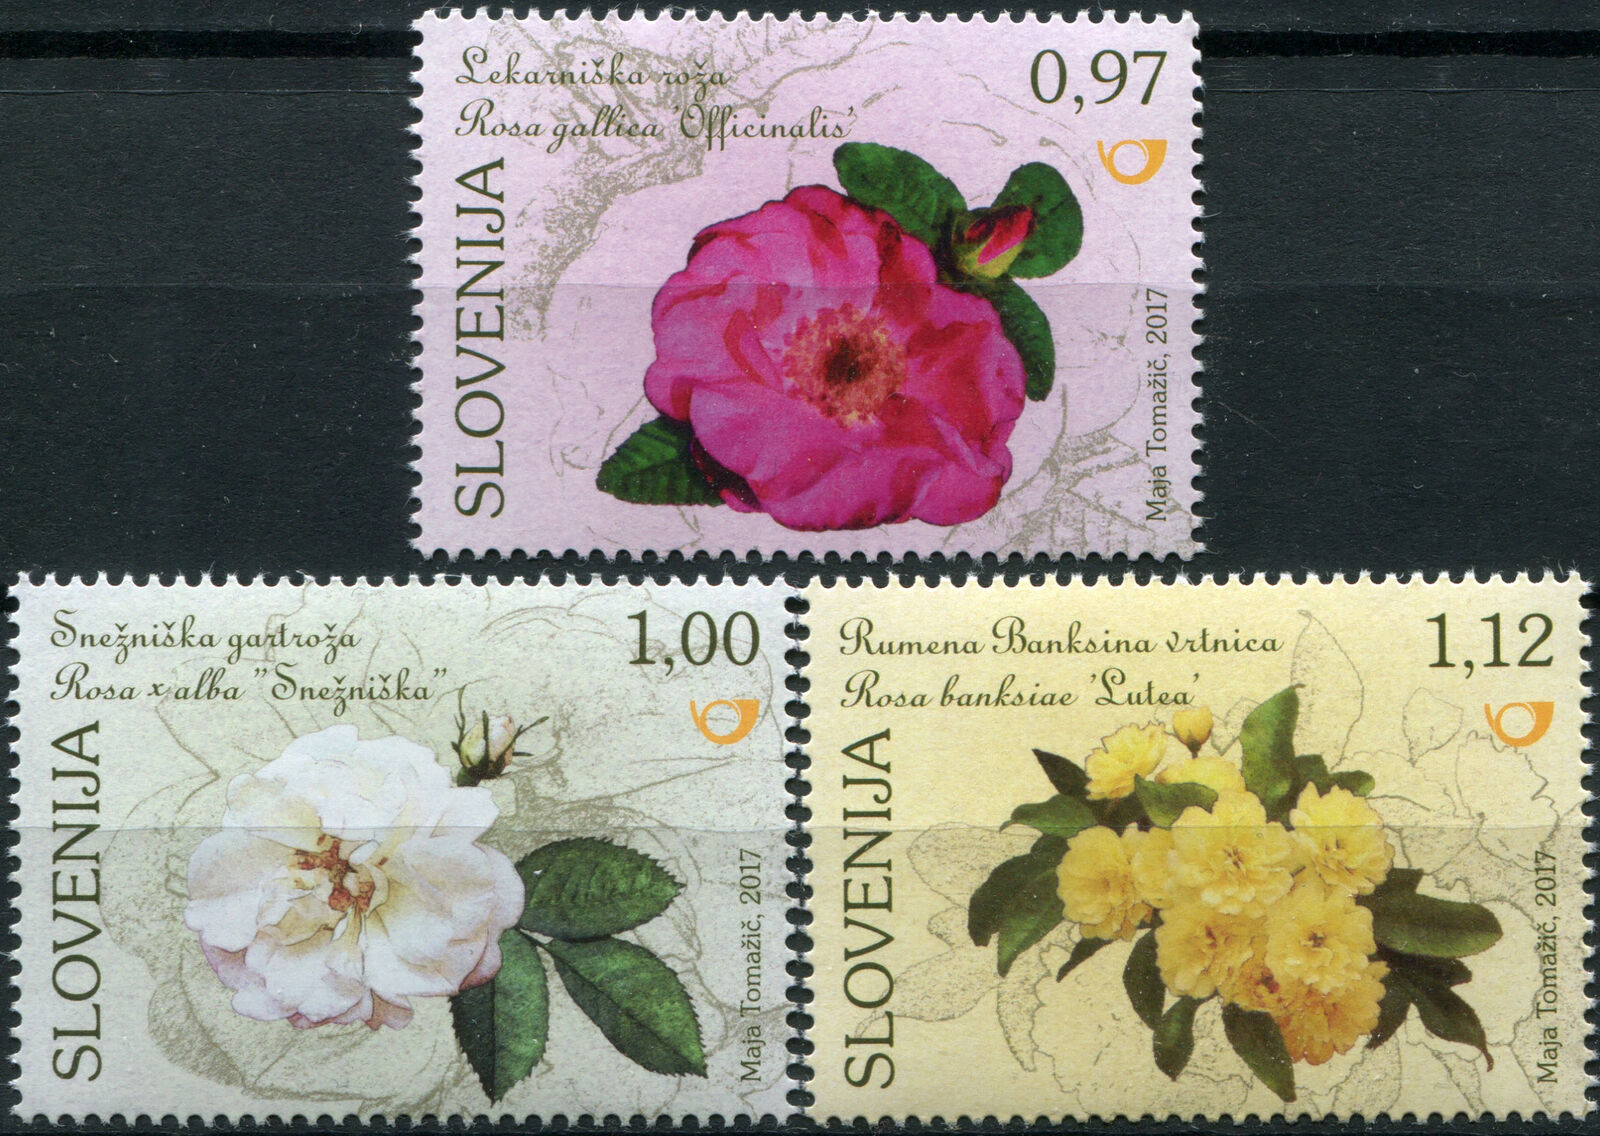 Slovenia. 2017. Flora - Roses (MNH OG) Set of 3 stamps